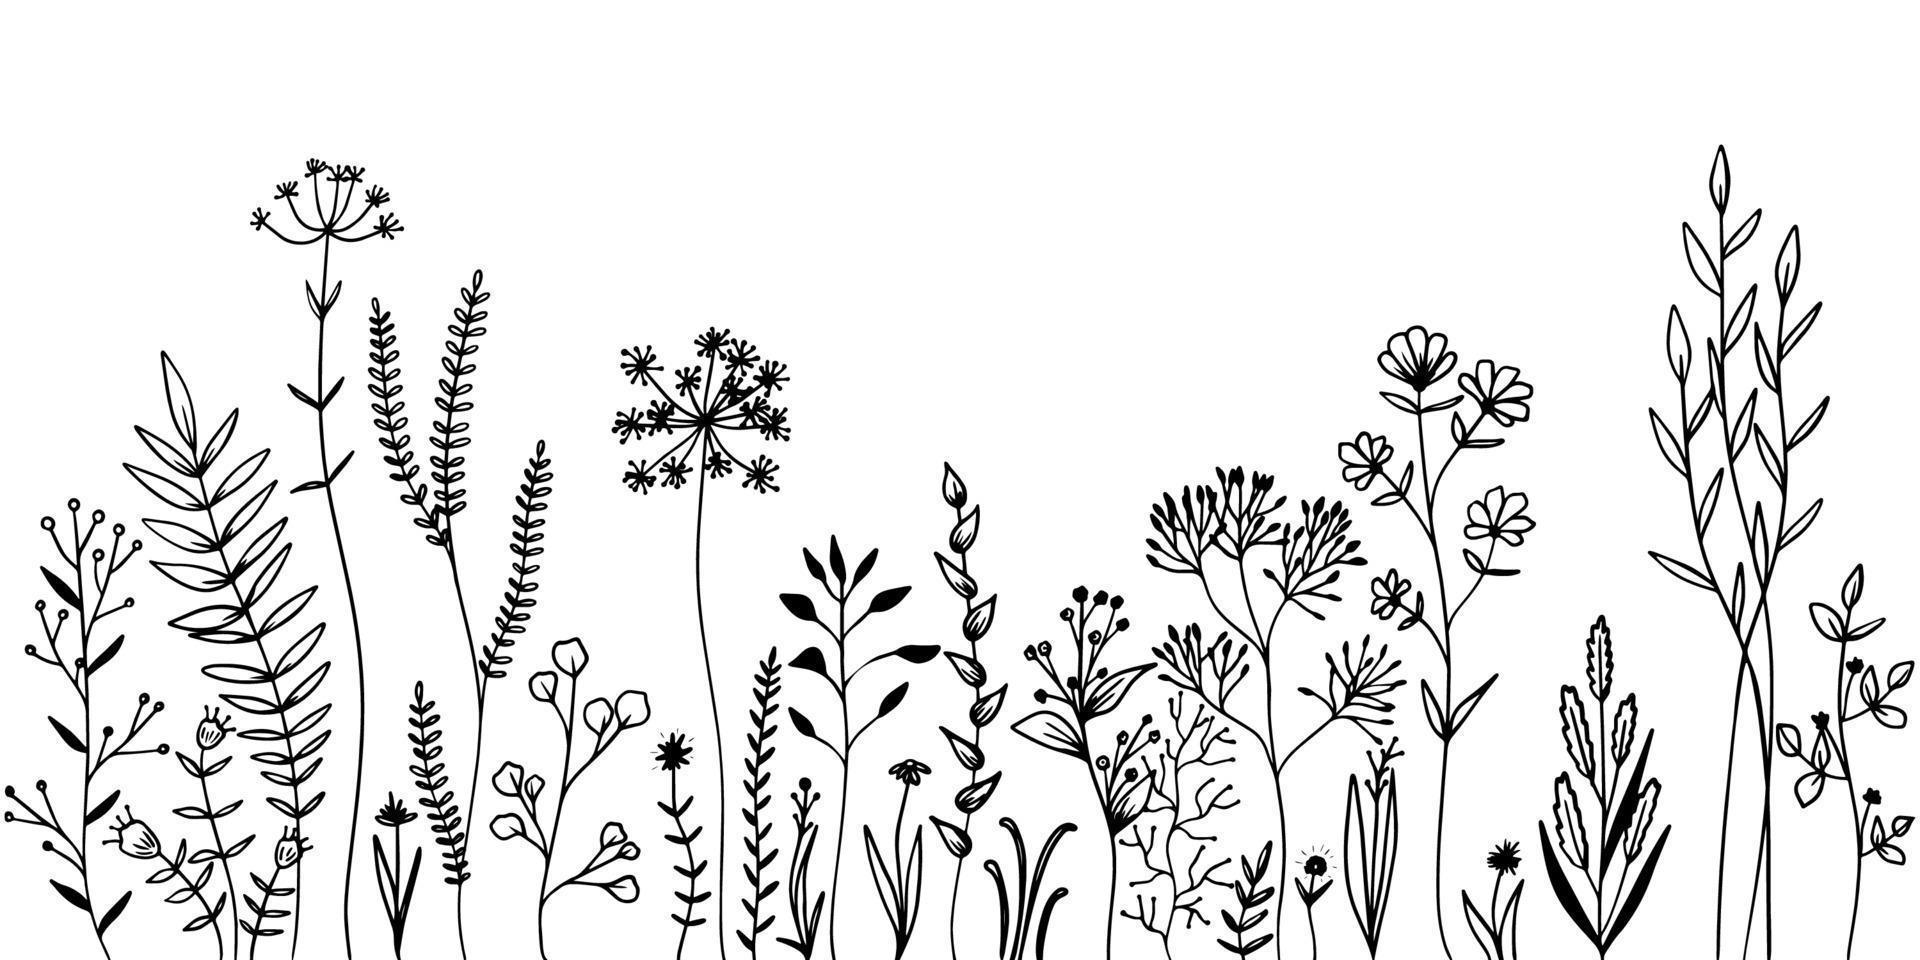 Reihe von wilden Wiesenkräutern und Blumen. hand gezeichnete schwarze vektorillustration. isolierte Elemente für das Design. vektor